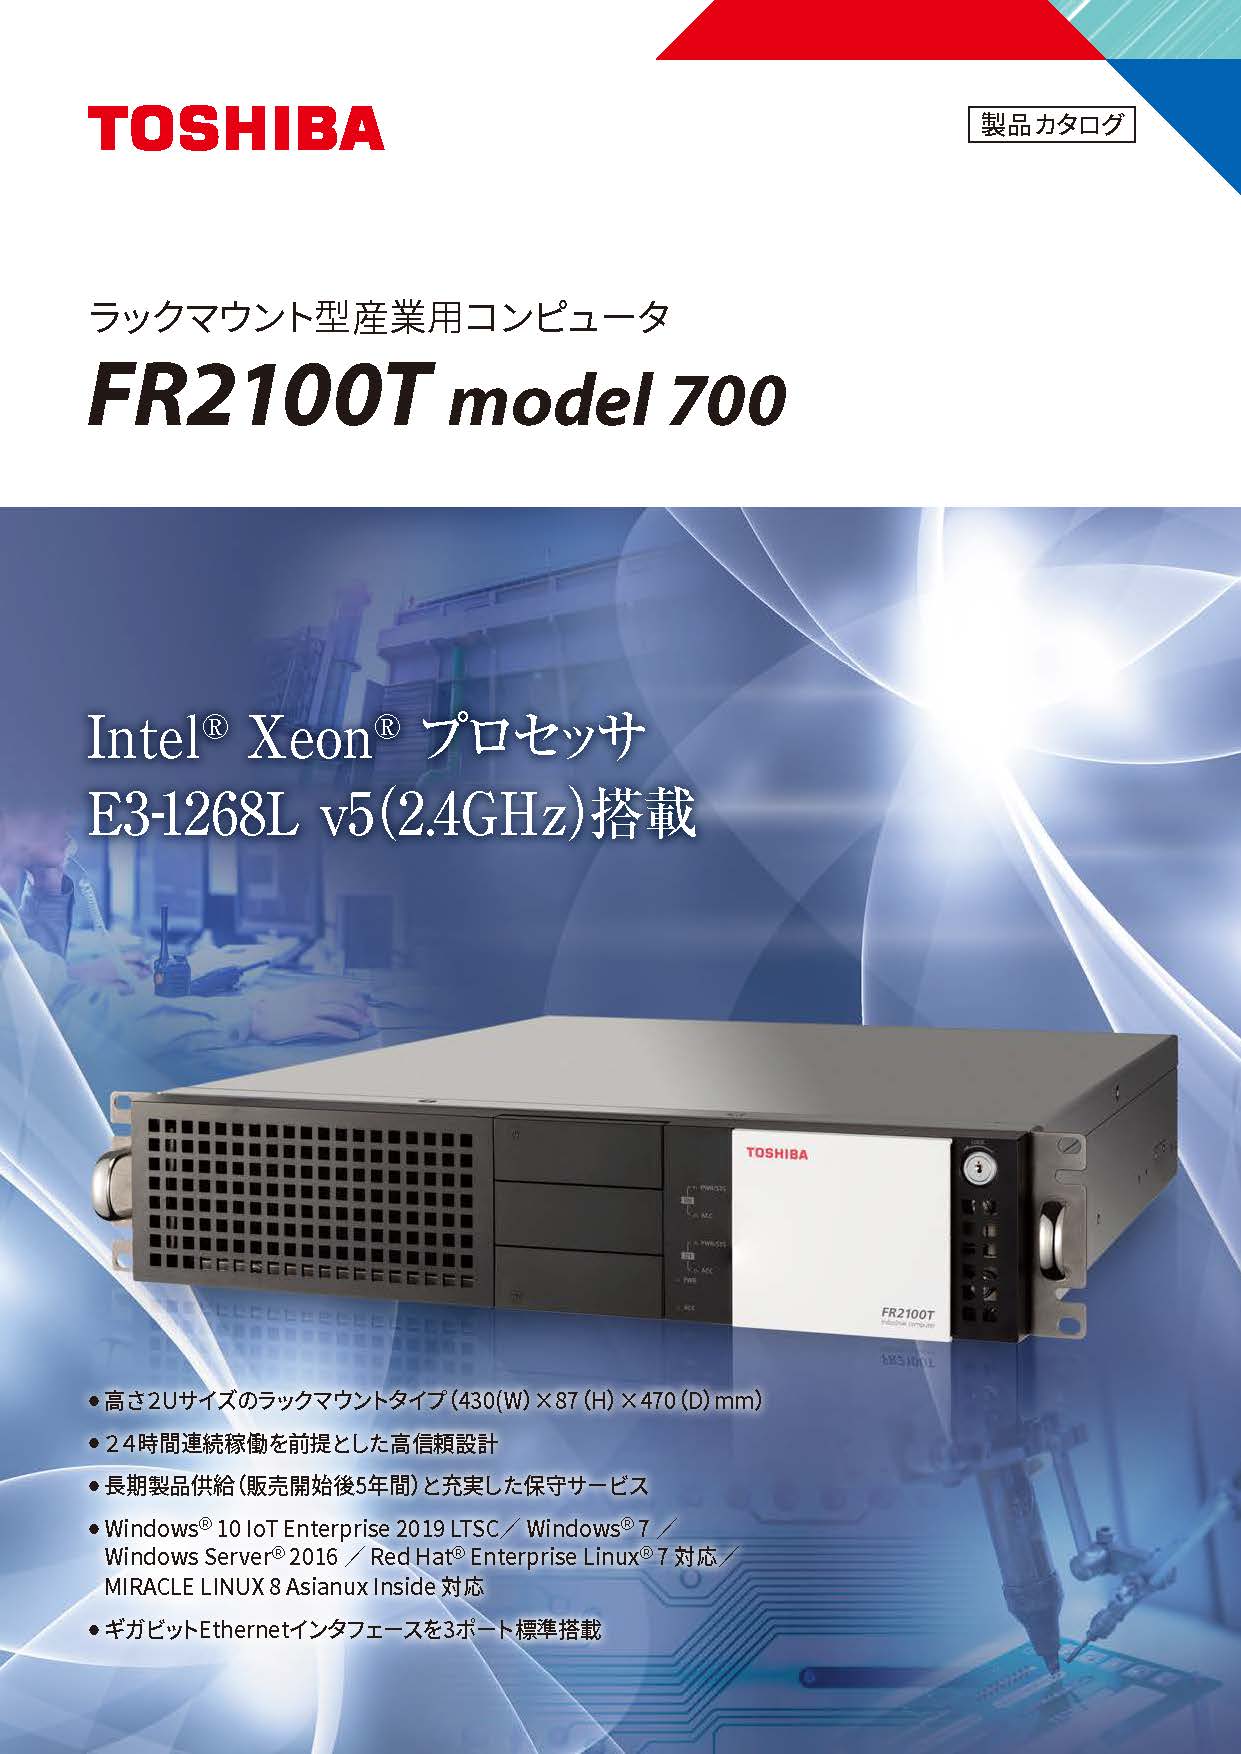 ラックマウント型 産業用コンピュータFR2100T model 700カタログ